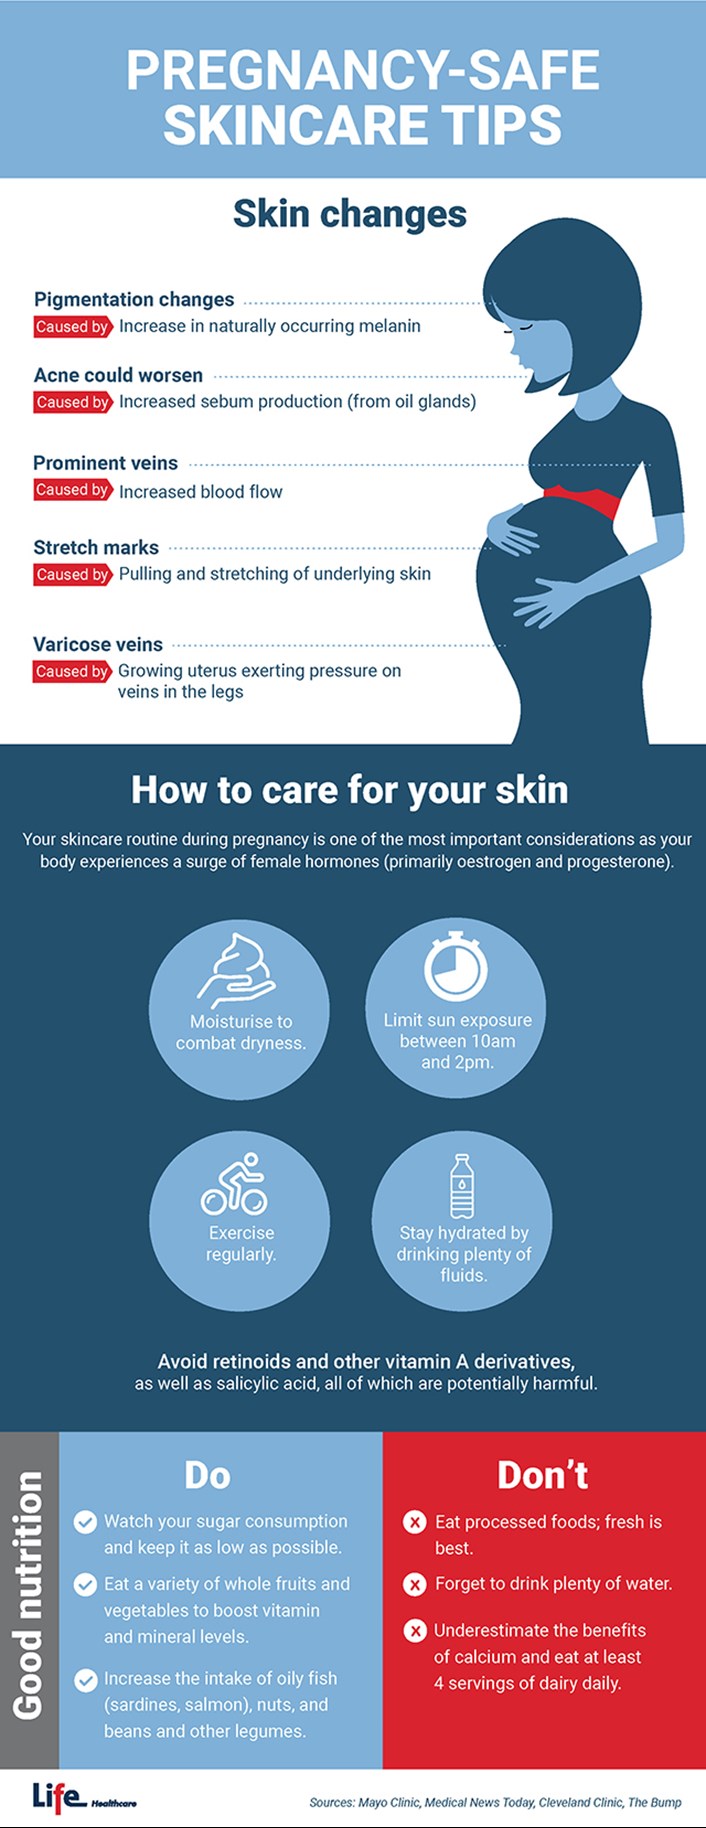 Pregnancy-safe skincare tips